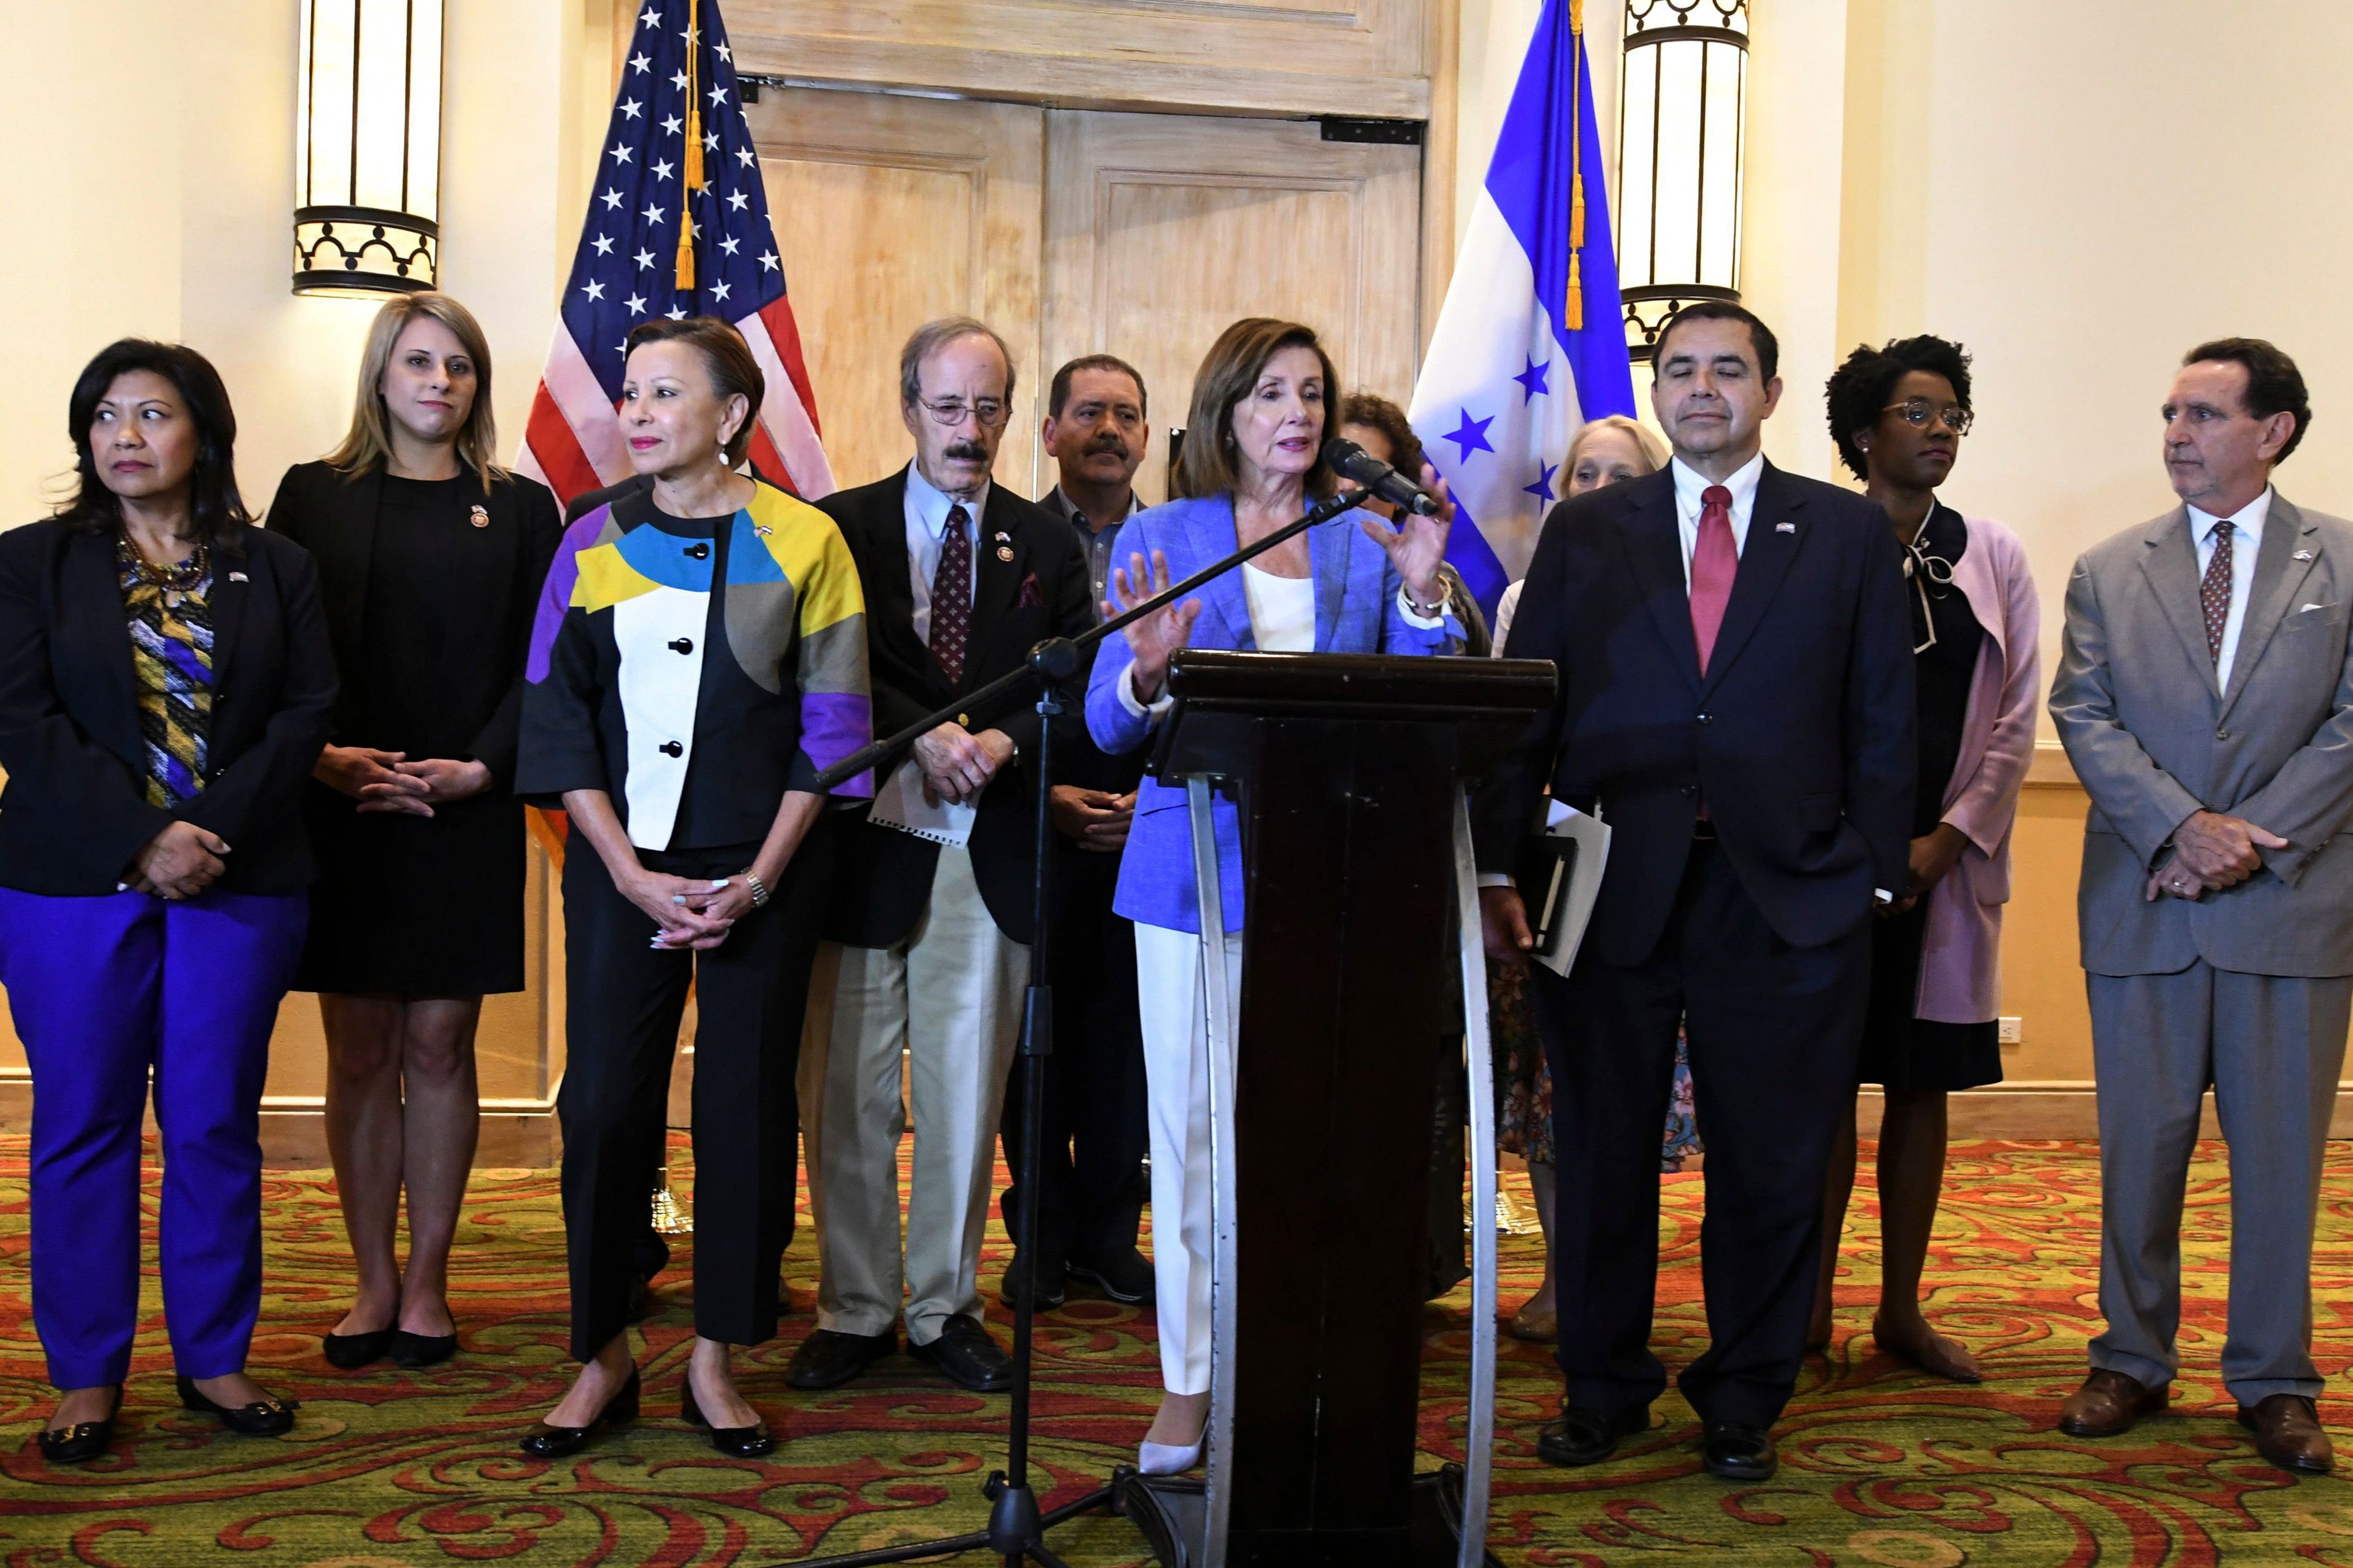 Acompañada por congresistas estadounidenses, la presidenta de la Cámara de Representantes de Estados Unidos, Nancy Pelosi -al frente- brinda conferencia de prensa en Honduras. (Foto Prensa Libre: AFP)